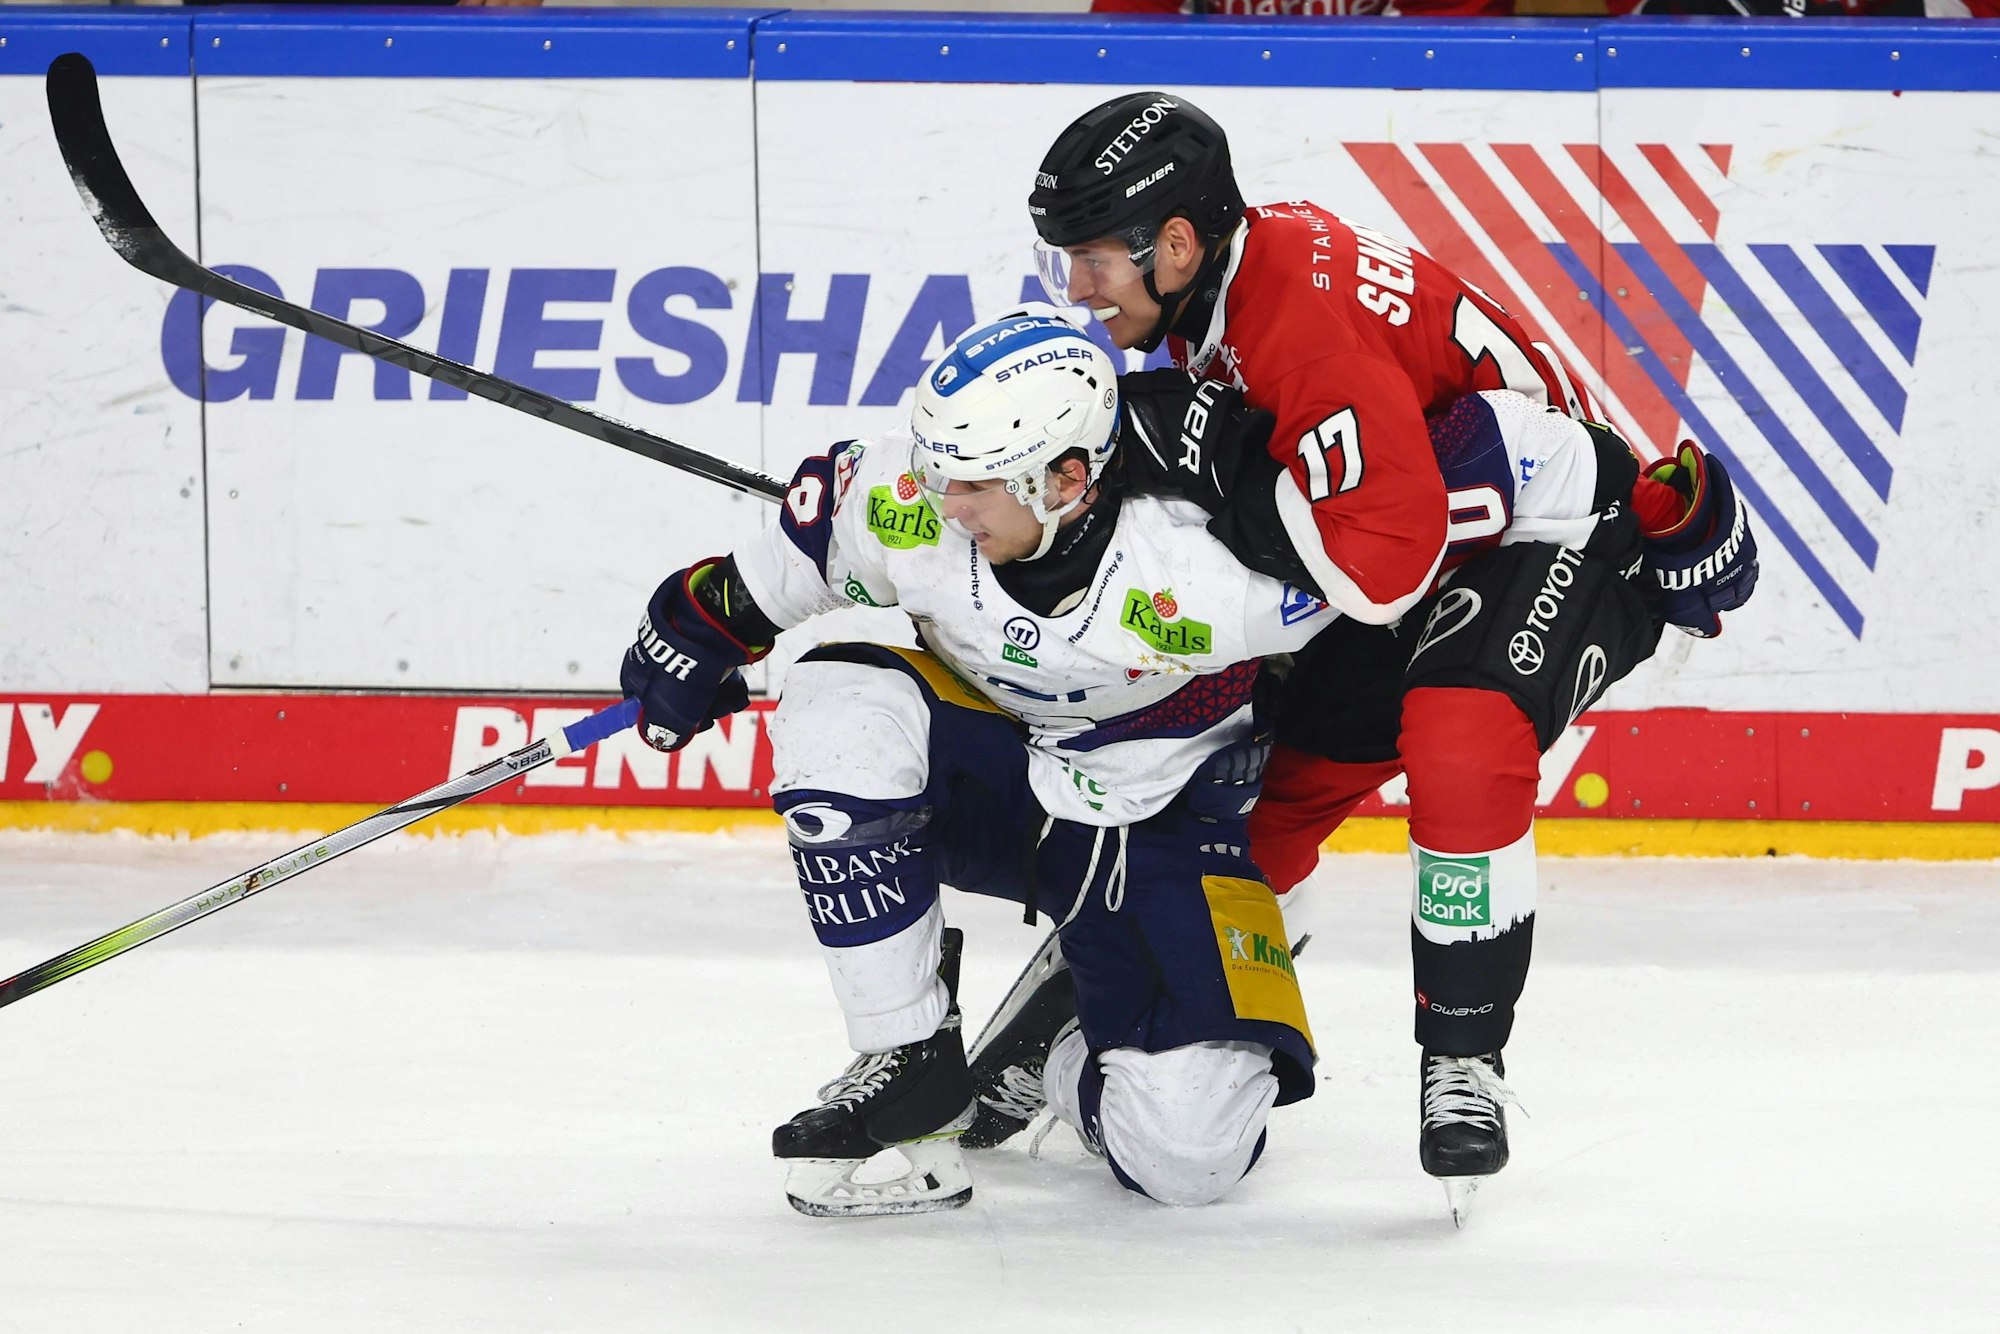 Zwei Eishockeyspieler befinden sich in einem Zweikampf.